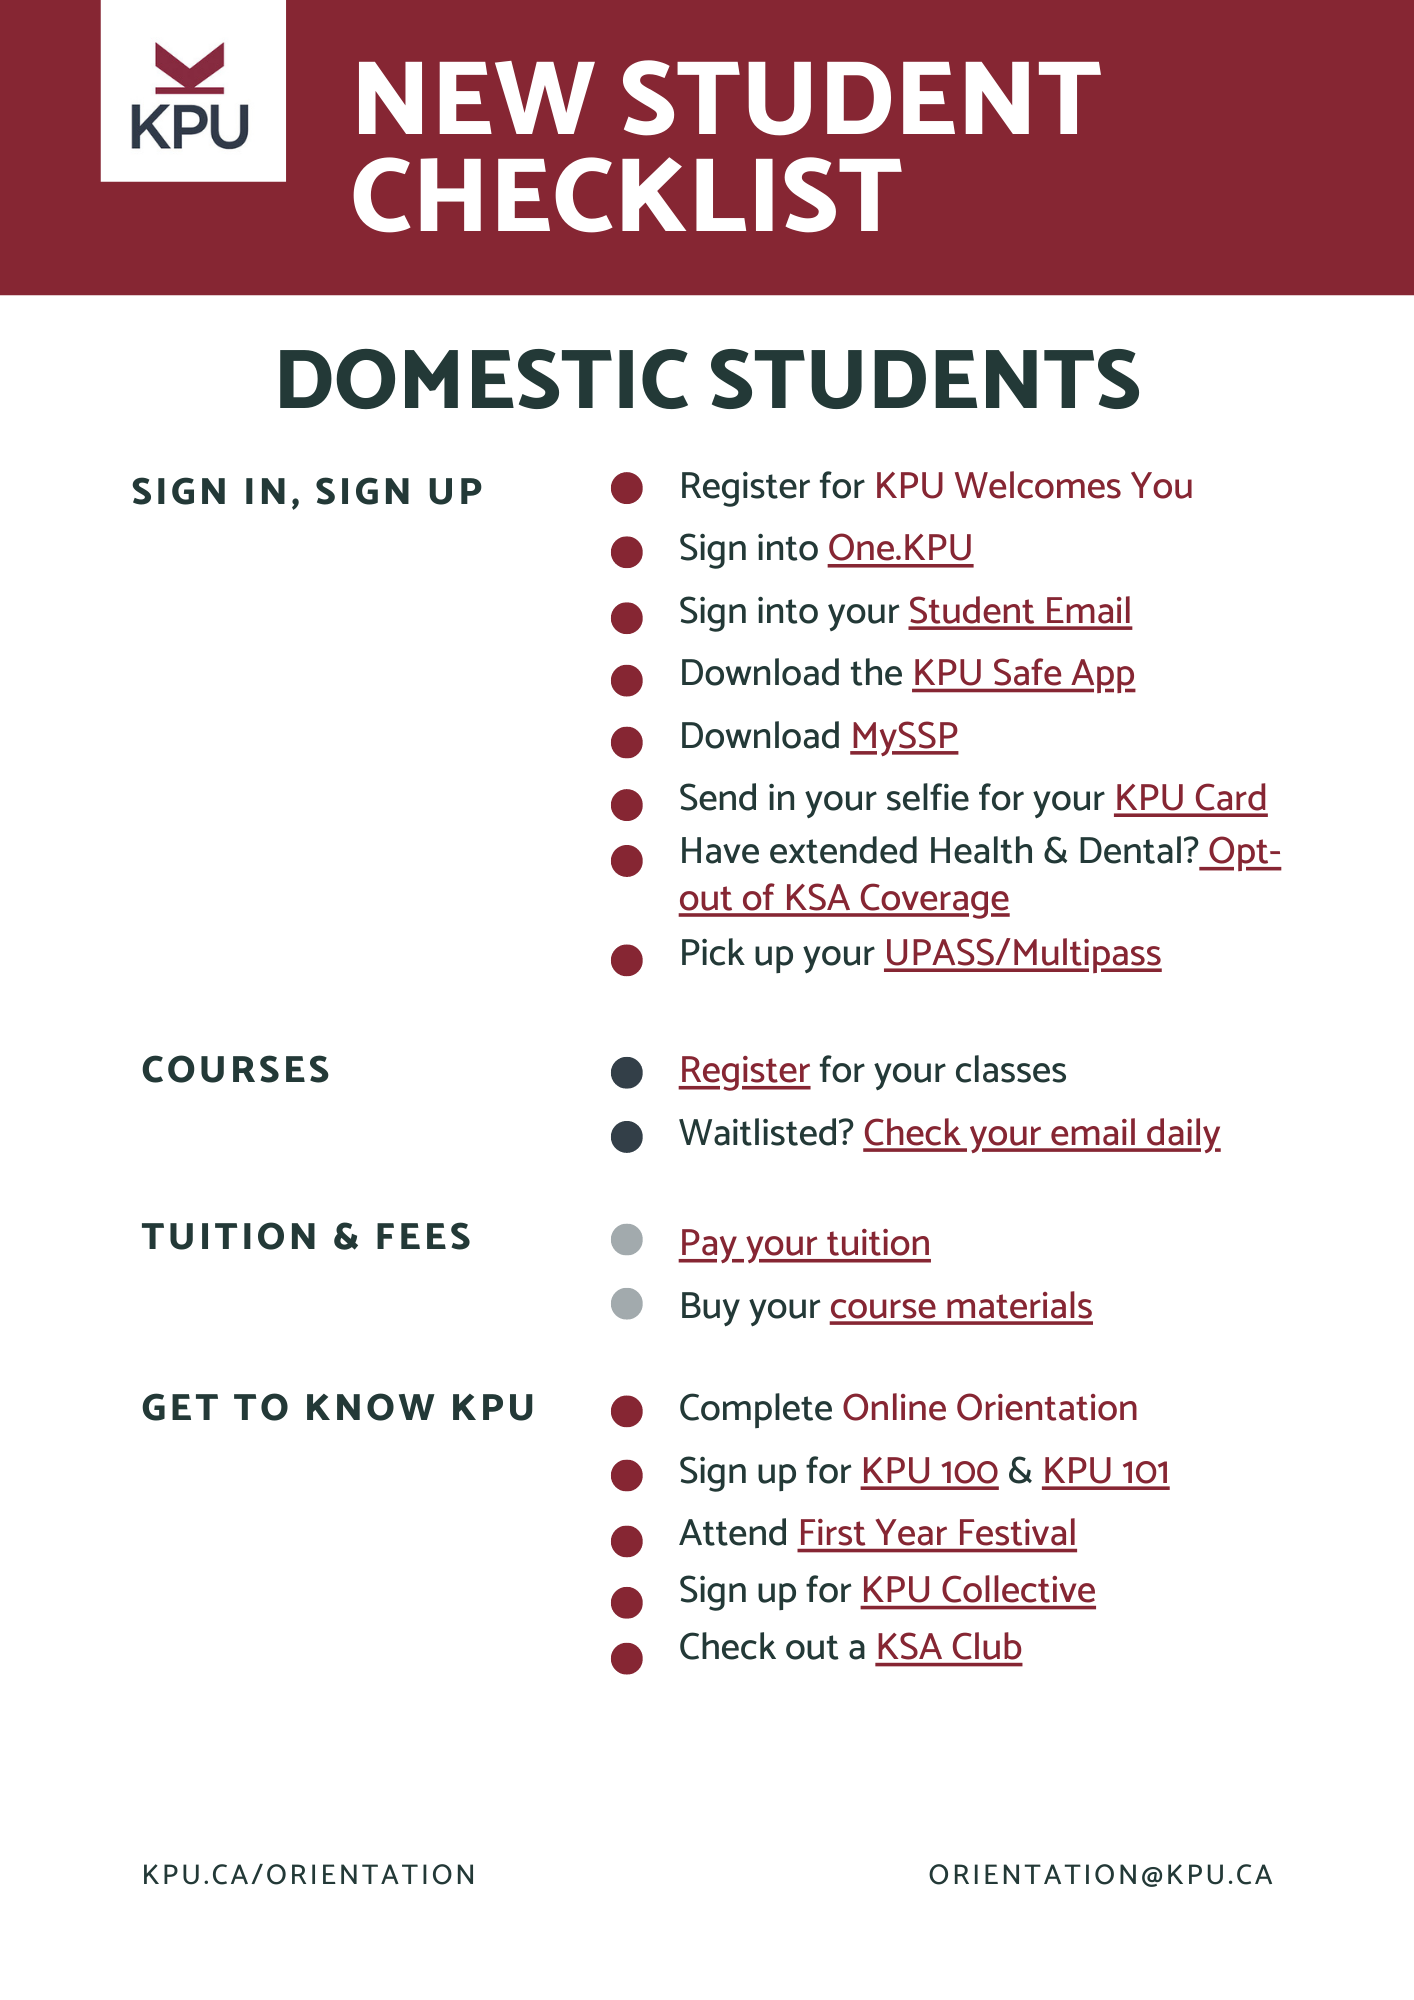 Domestic New Student Checklist - Fall 2022